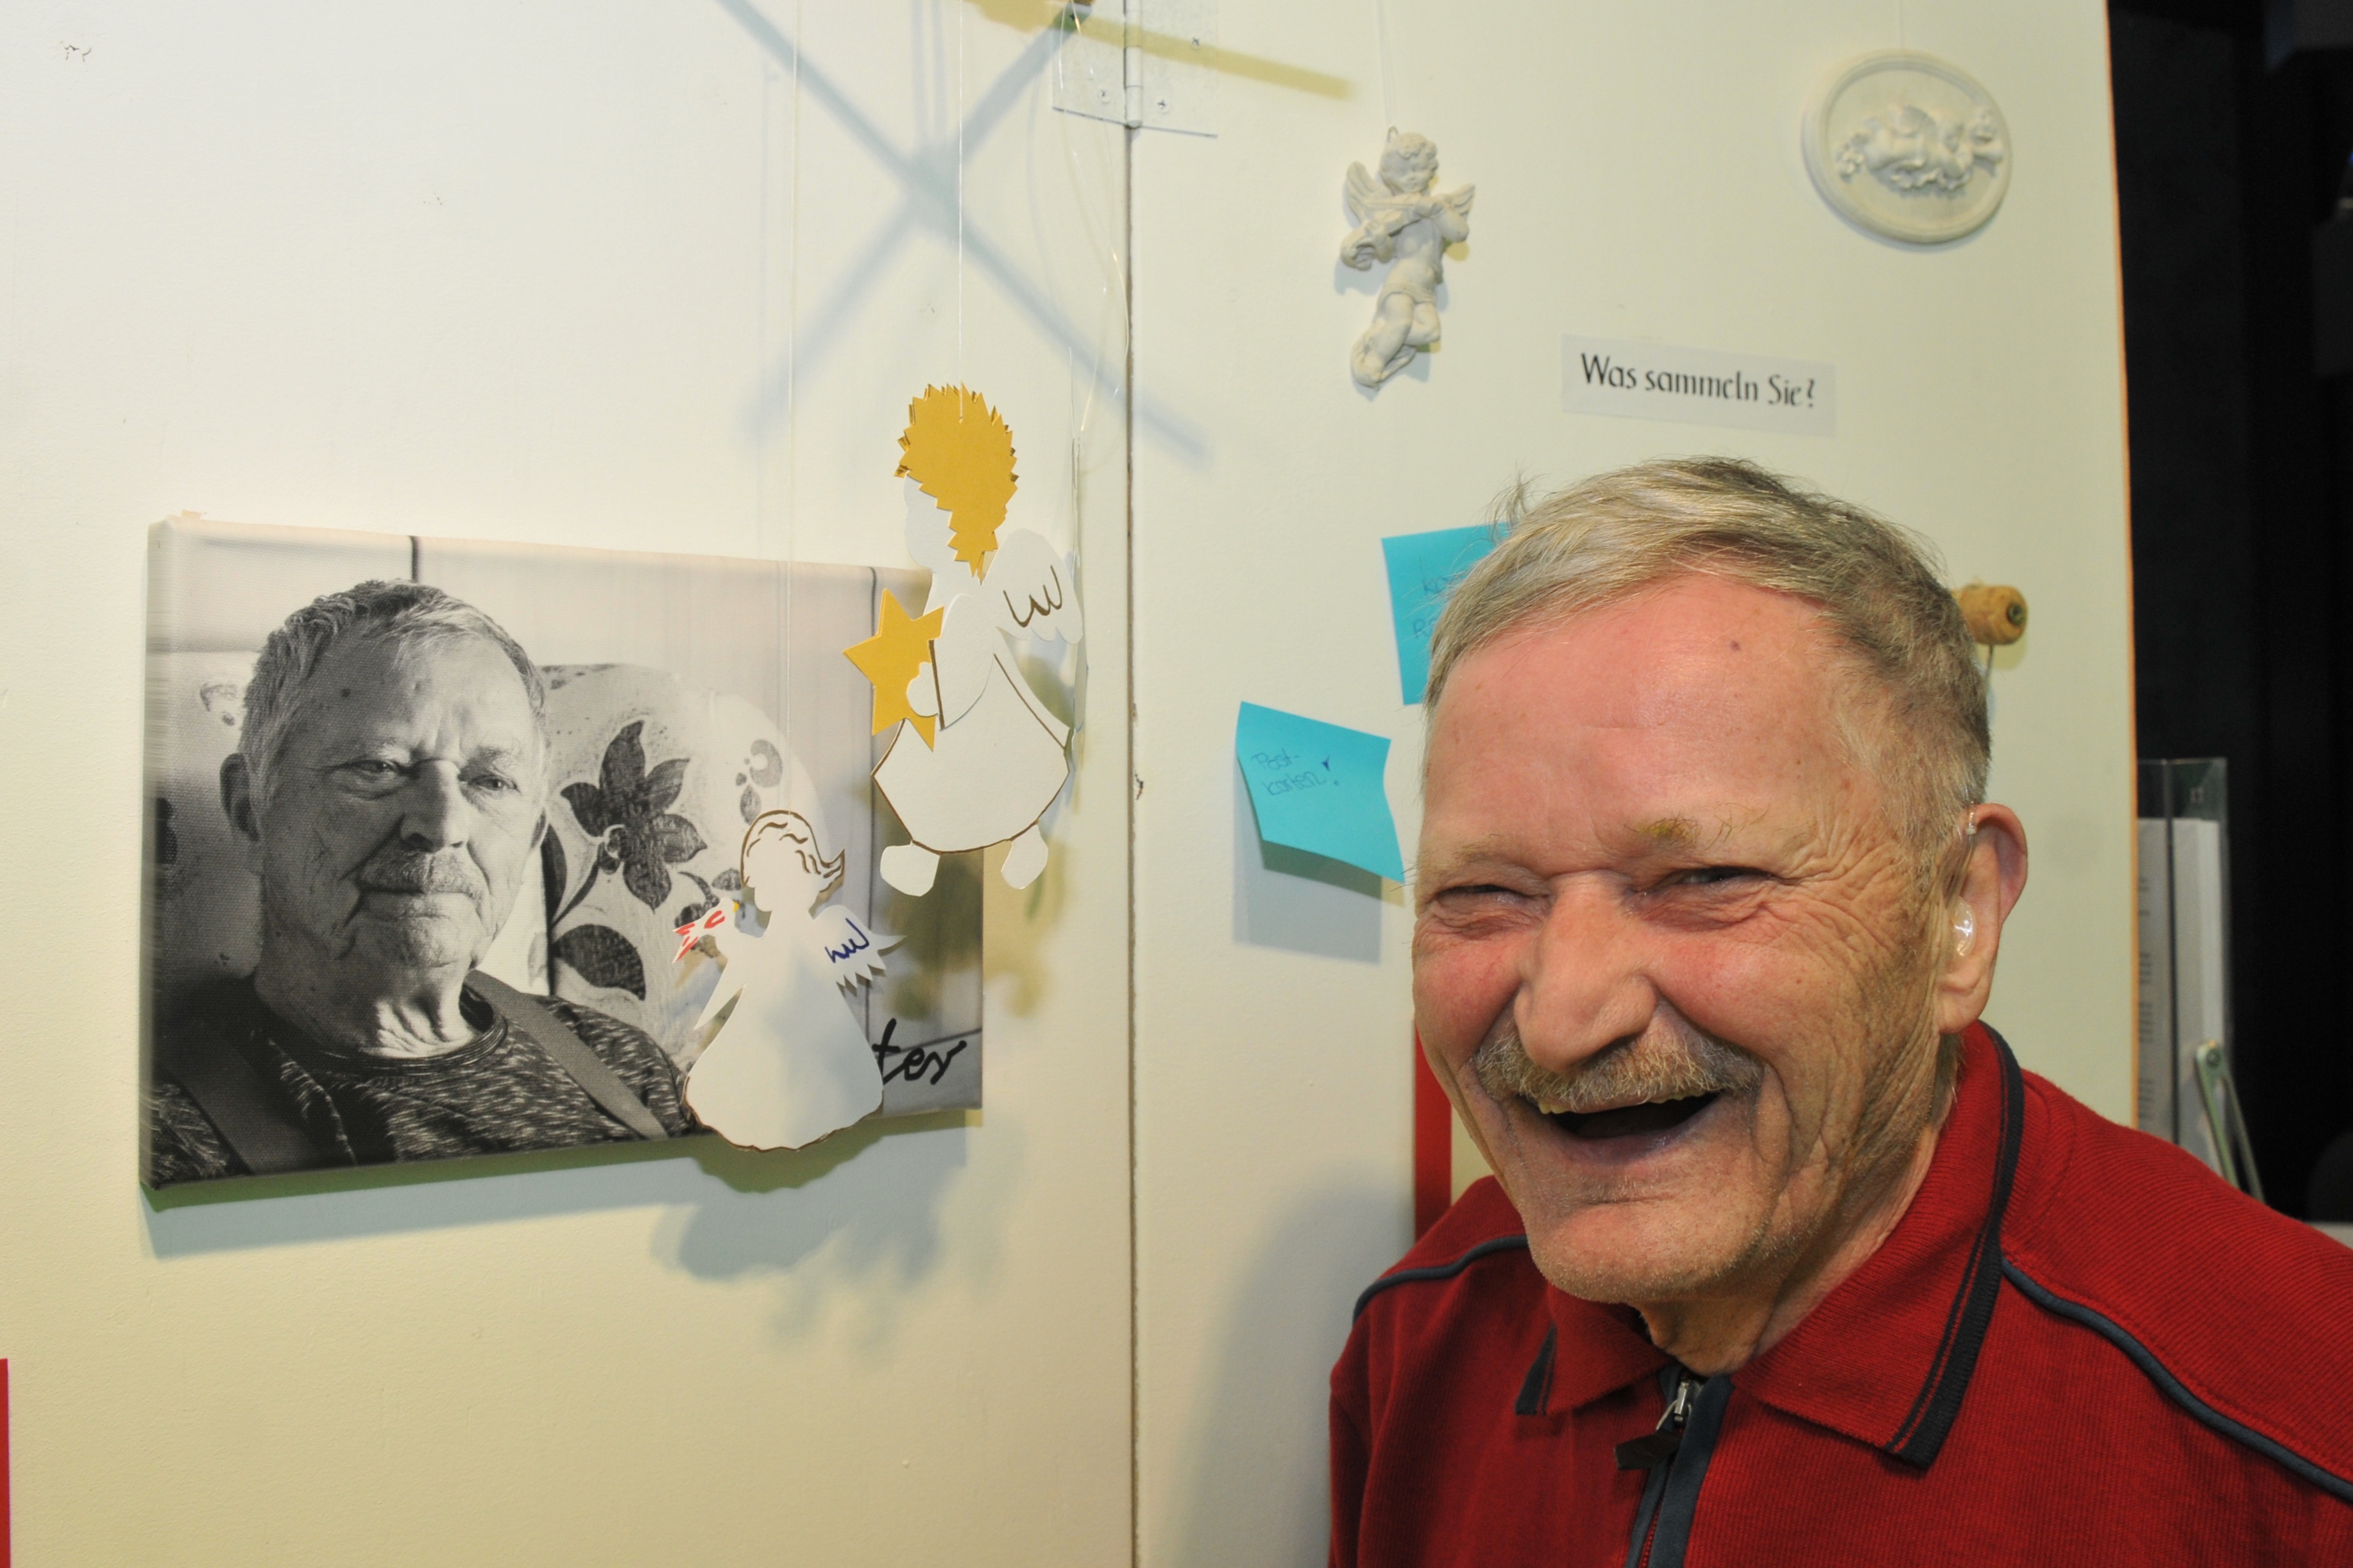 Menschen mit Behinderung erzählen von ihrem Leben - Ausstellung in Augsburg eröffnet